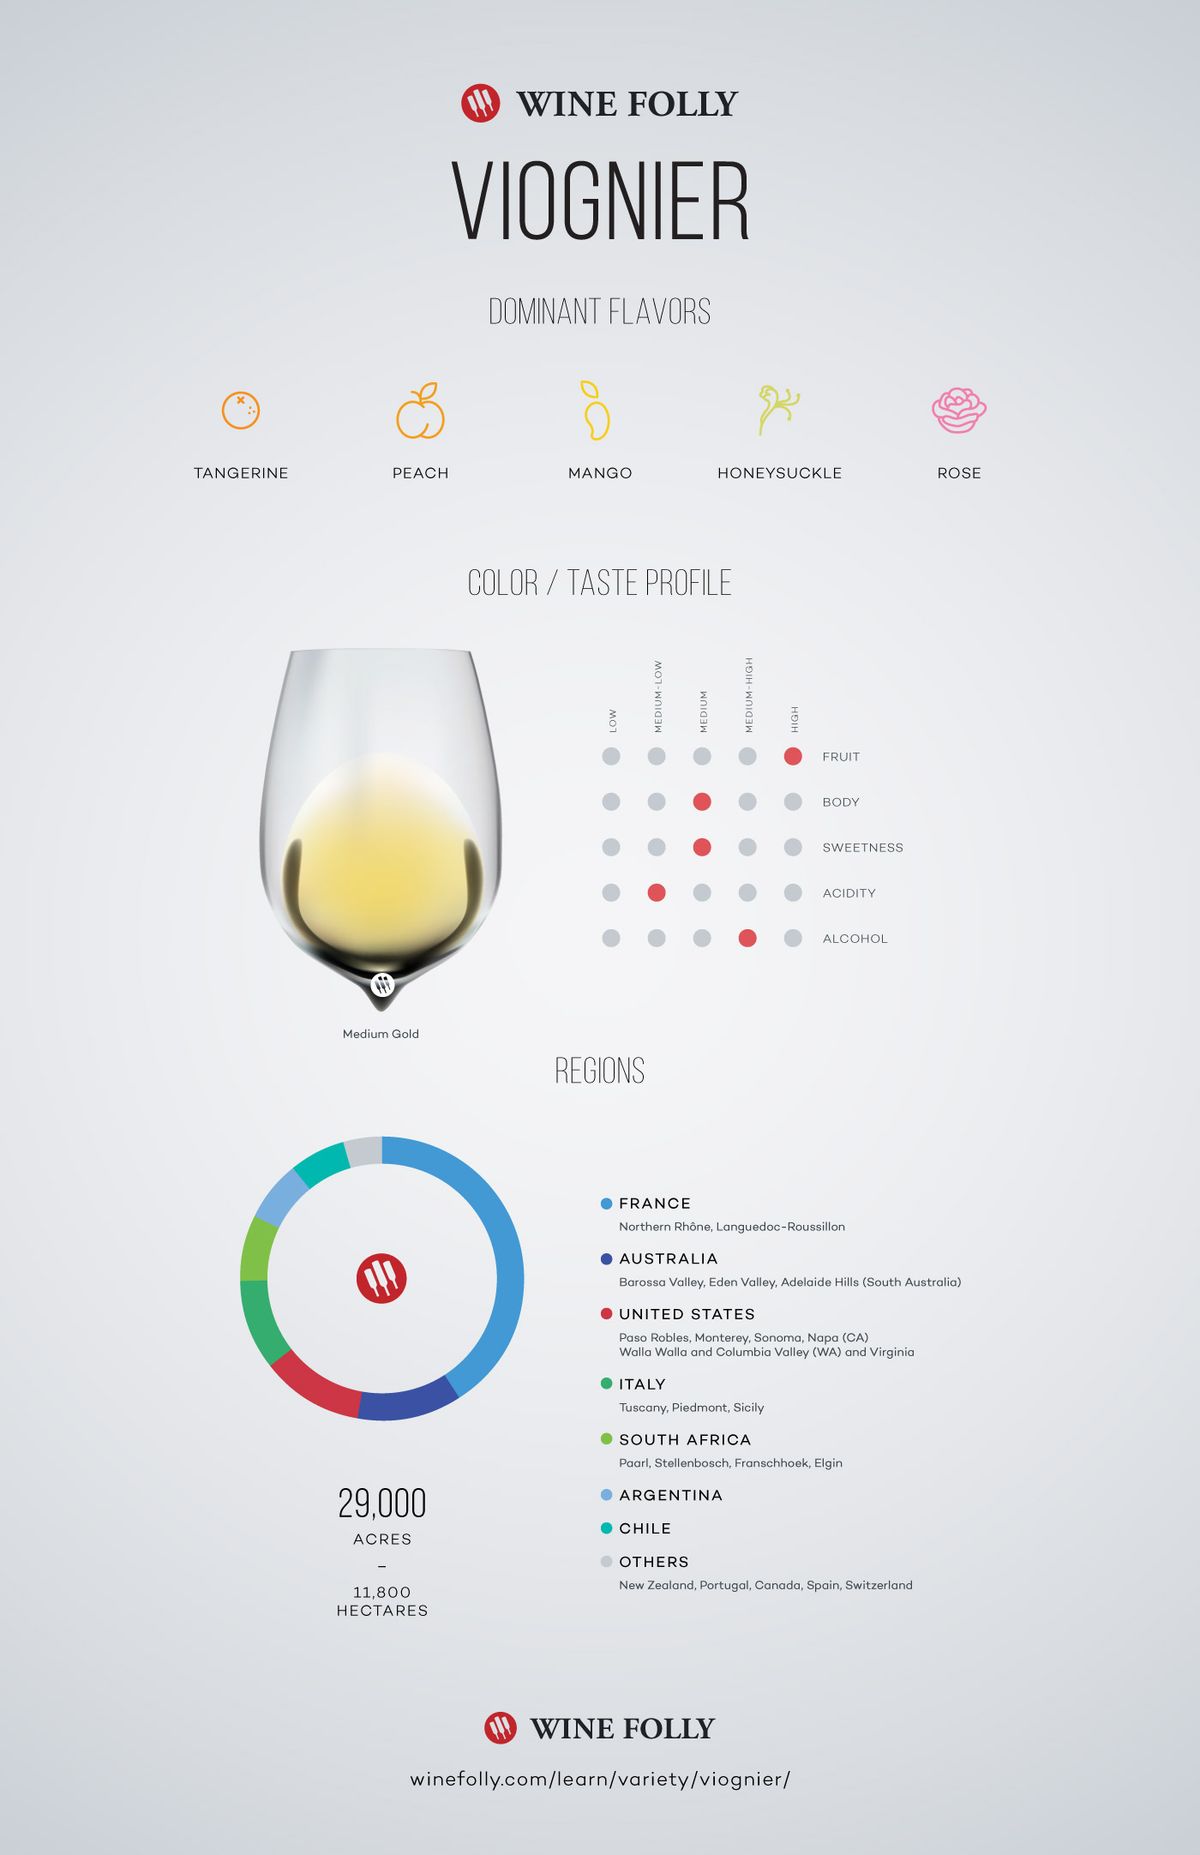 ヴィオニエのワインの味覚プロファイルとワインフォリーによる地域分布